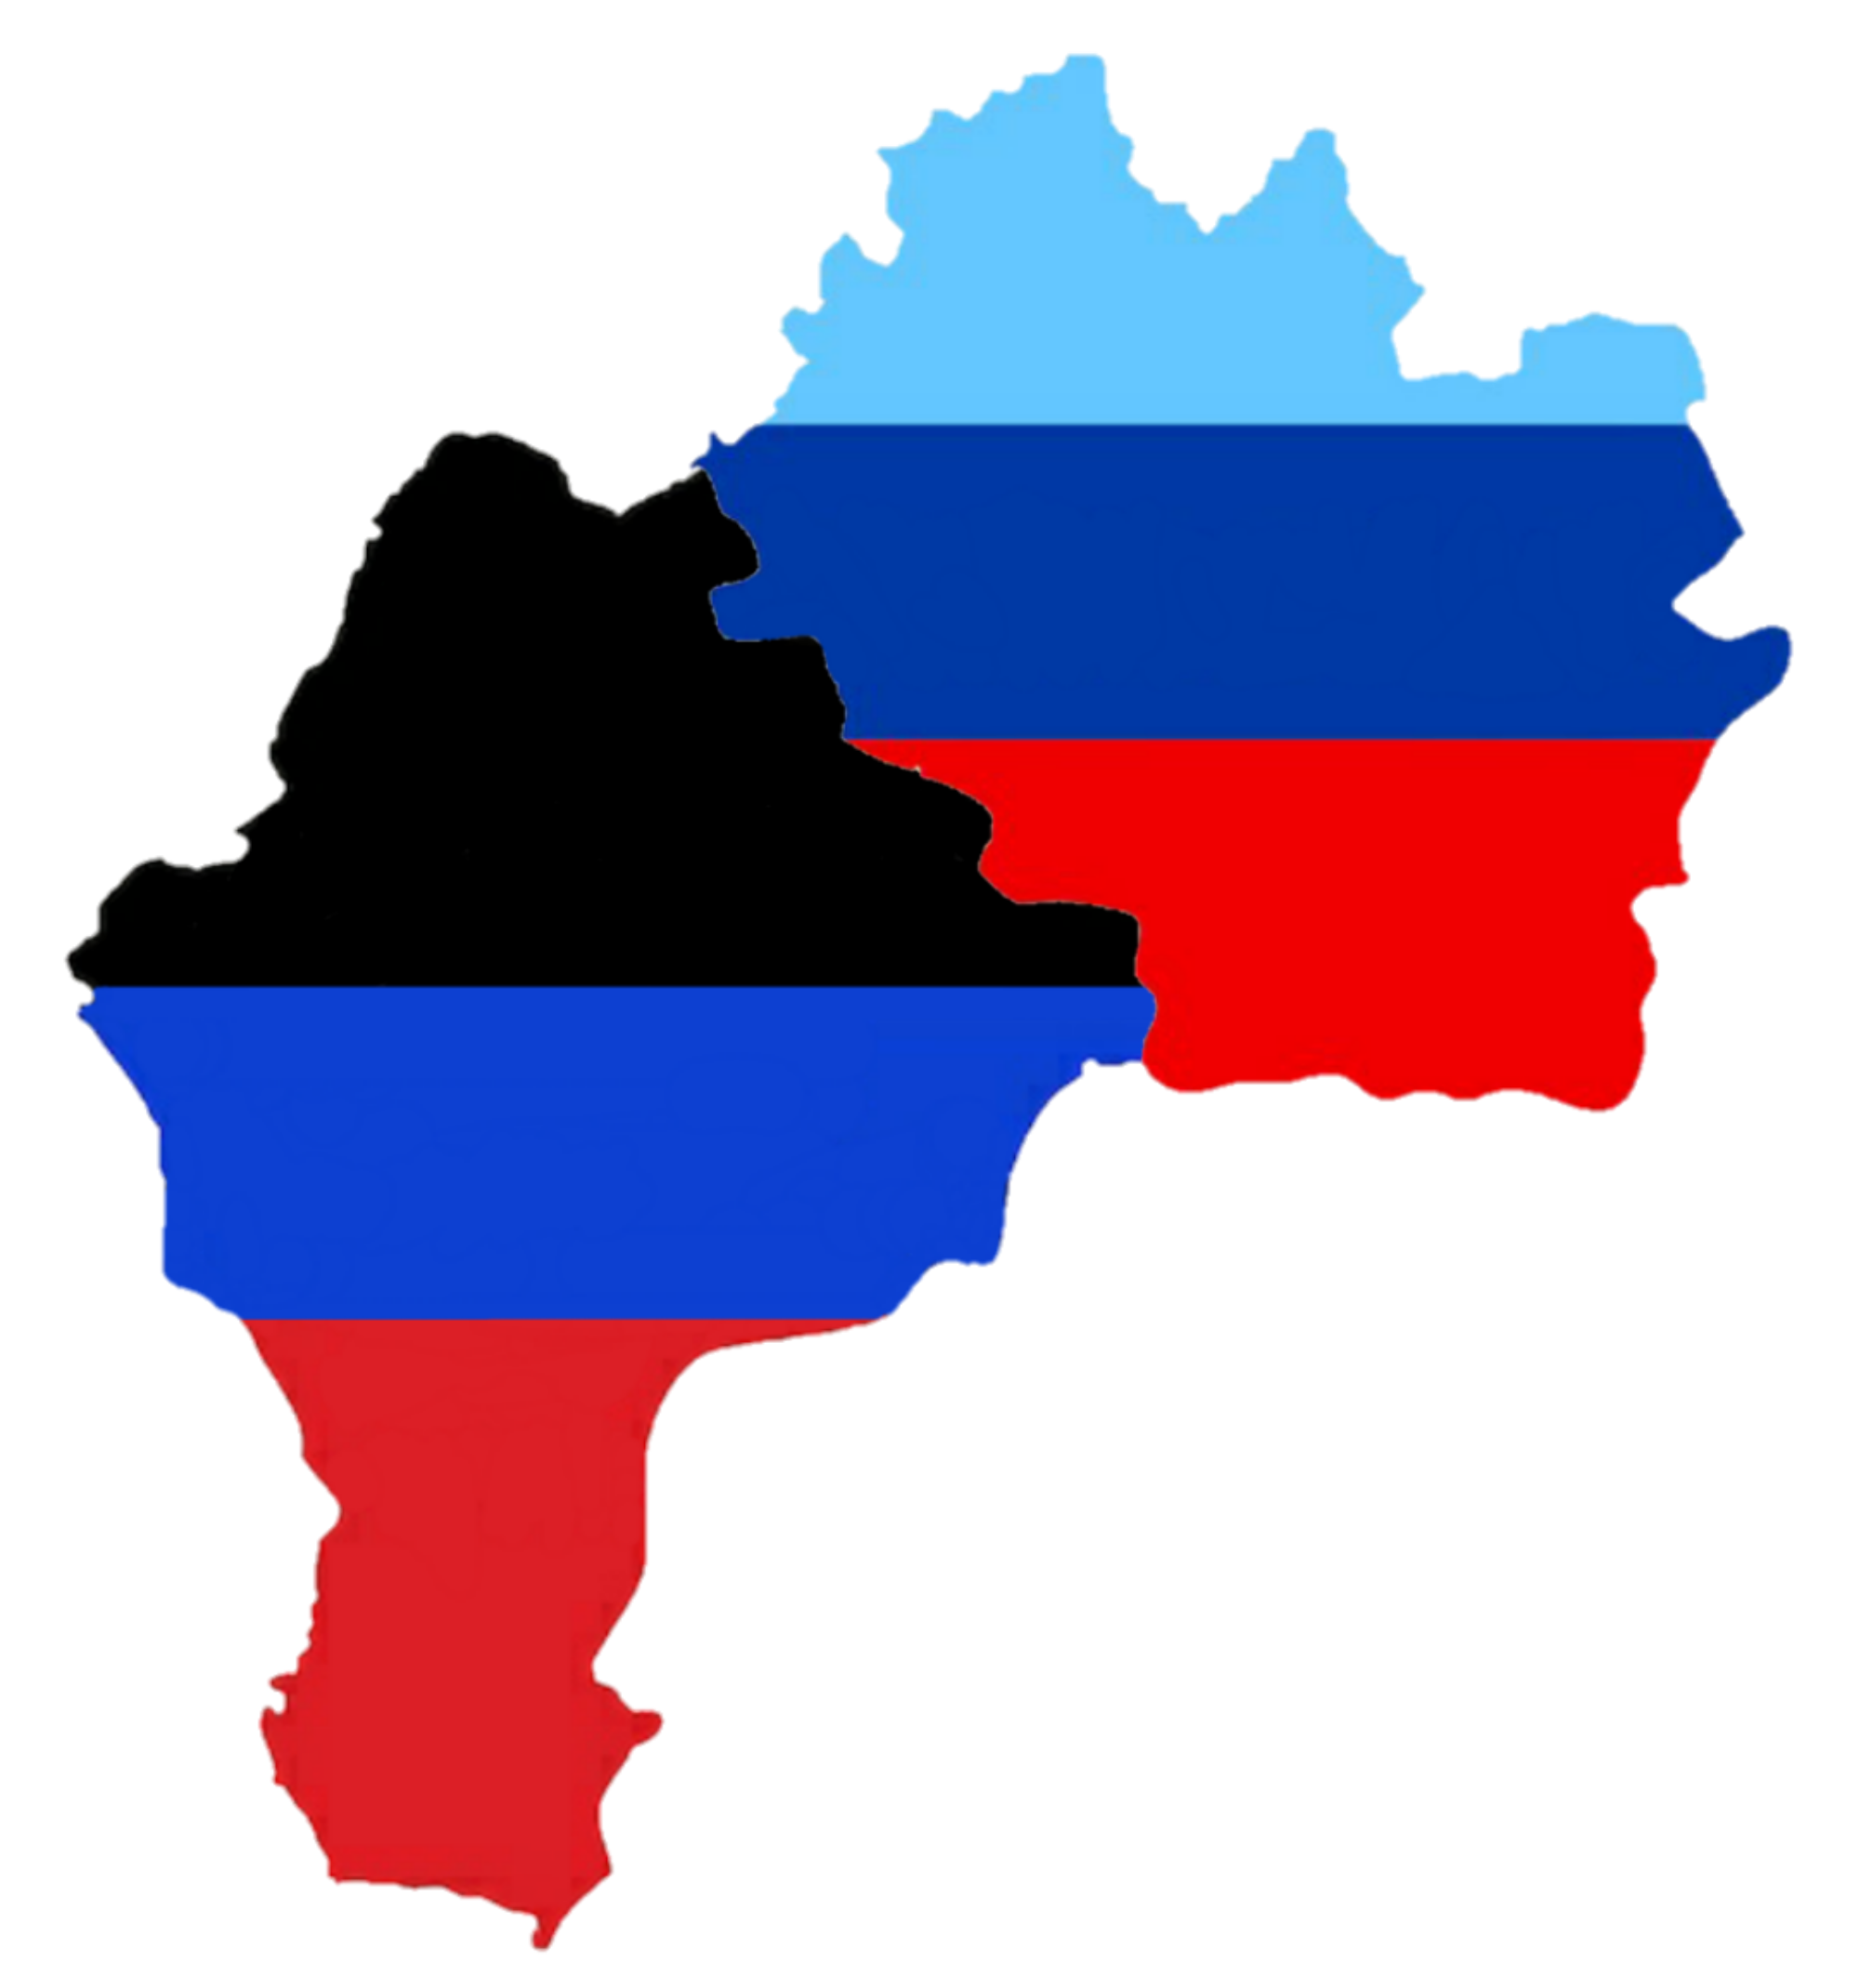 Russia: Putin ha firmato il riconoscimento dell’indipendenza delle repubbliche del Donbass